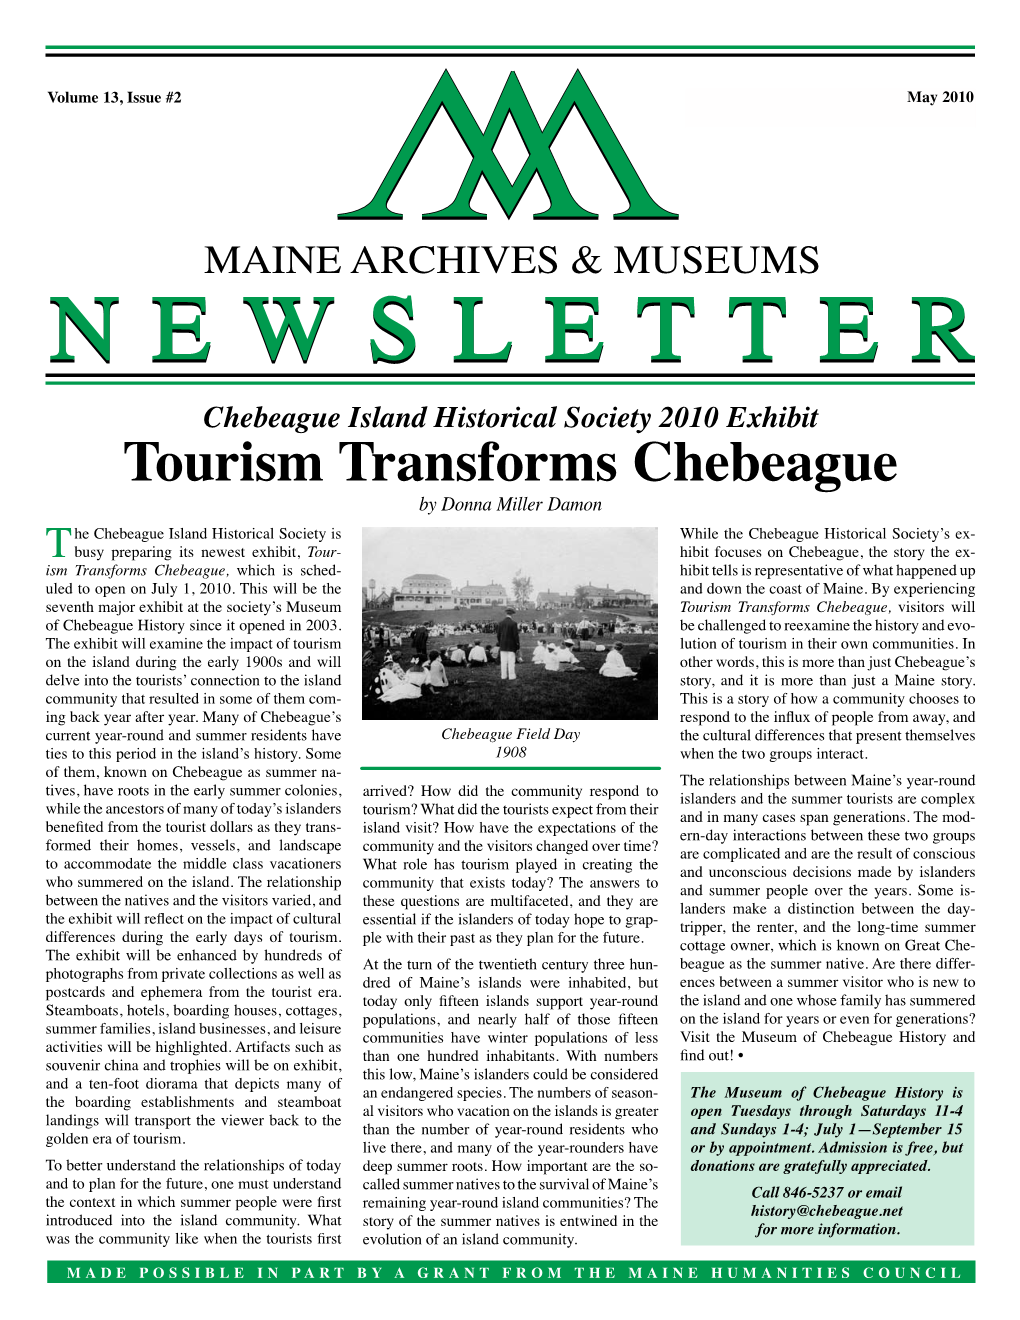 Tourism Transforms Chebeague